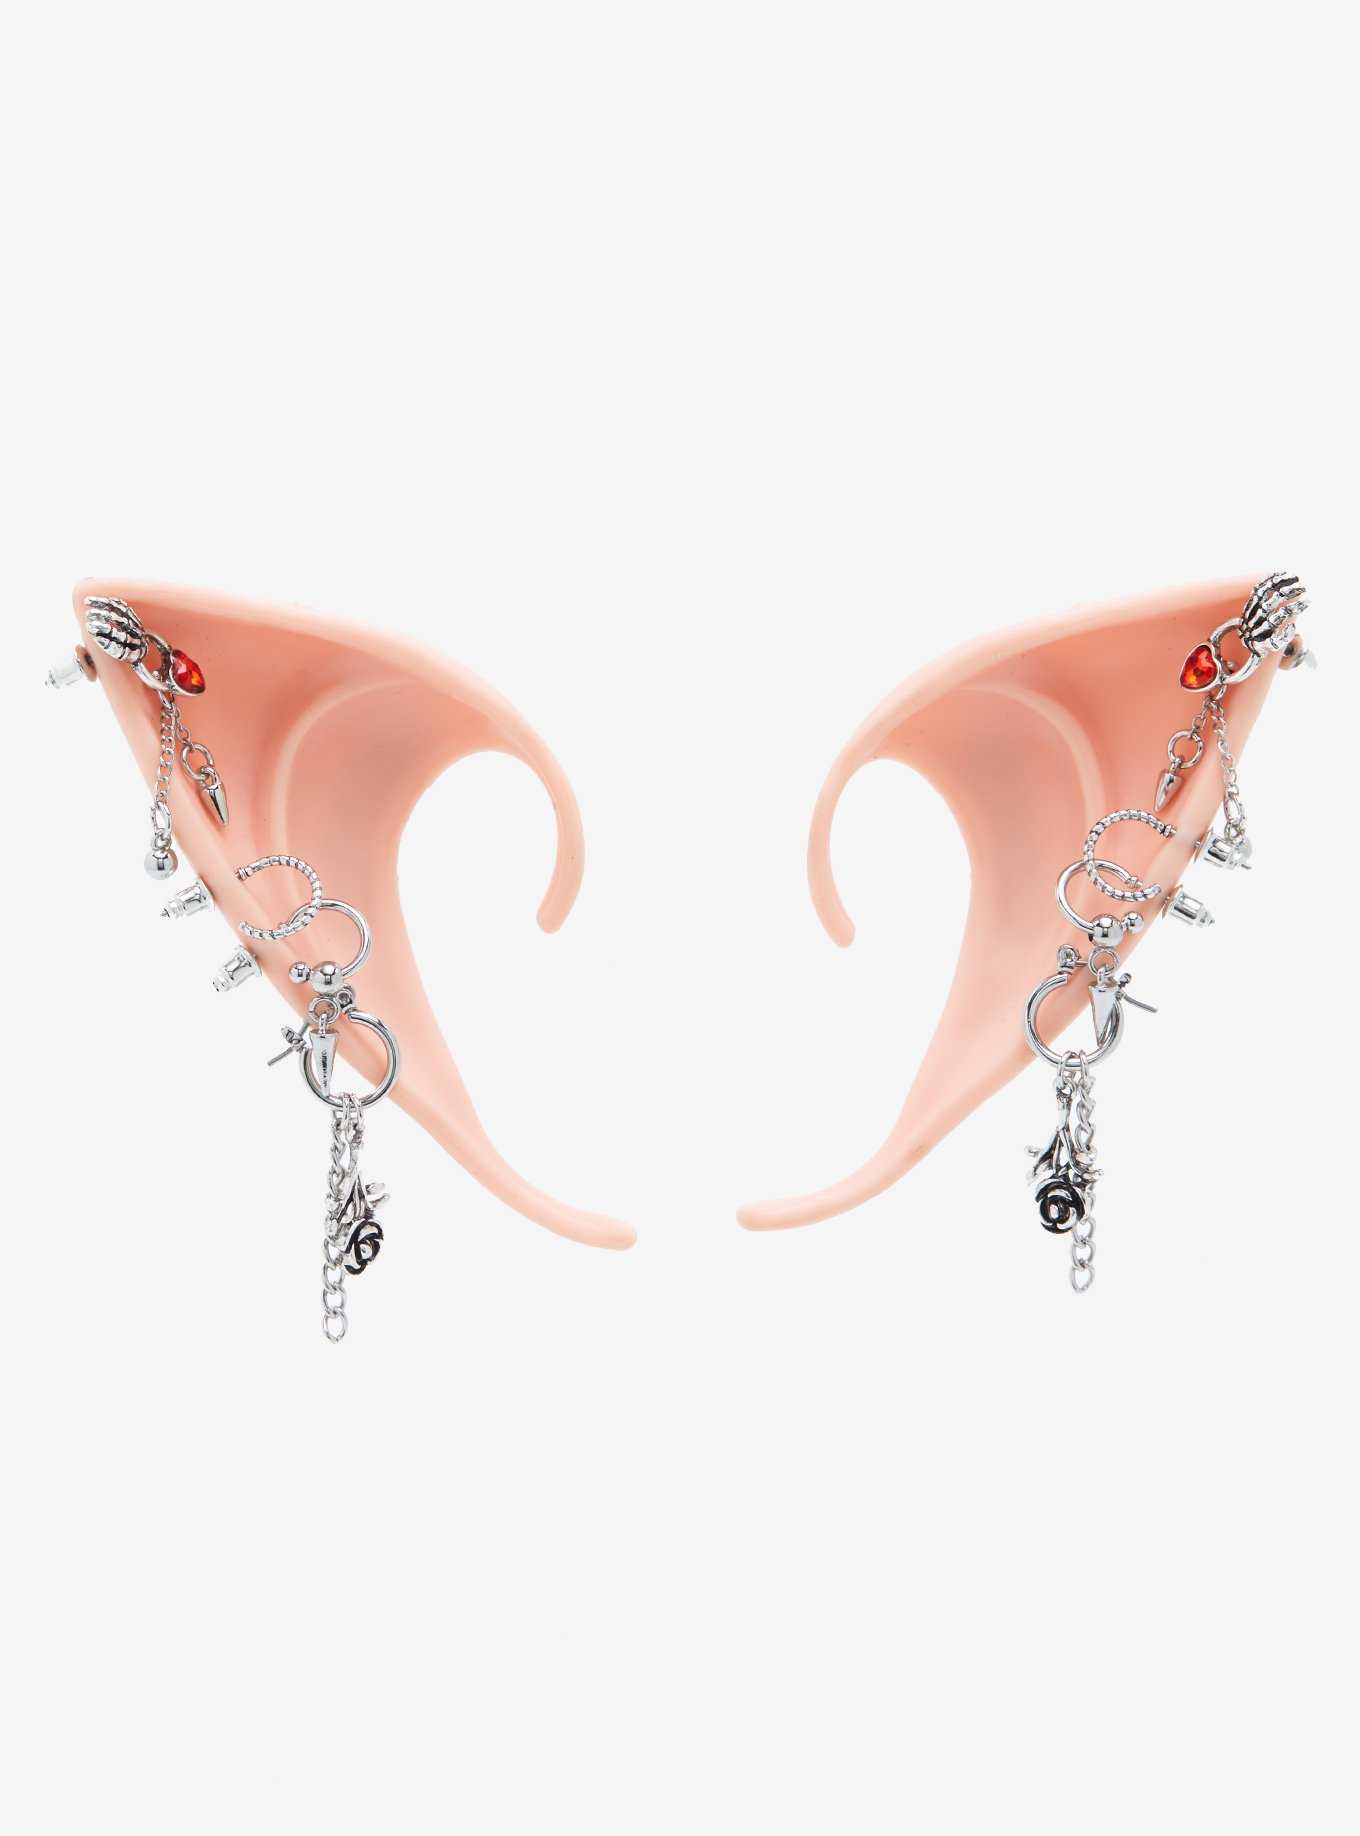 Fairy Pierced Earrings Molded Ear Cuffs, , hi-res